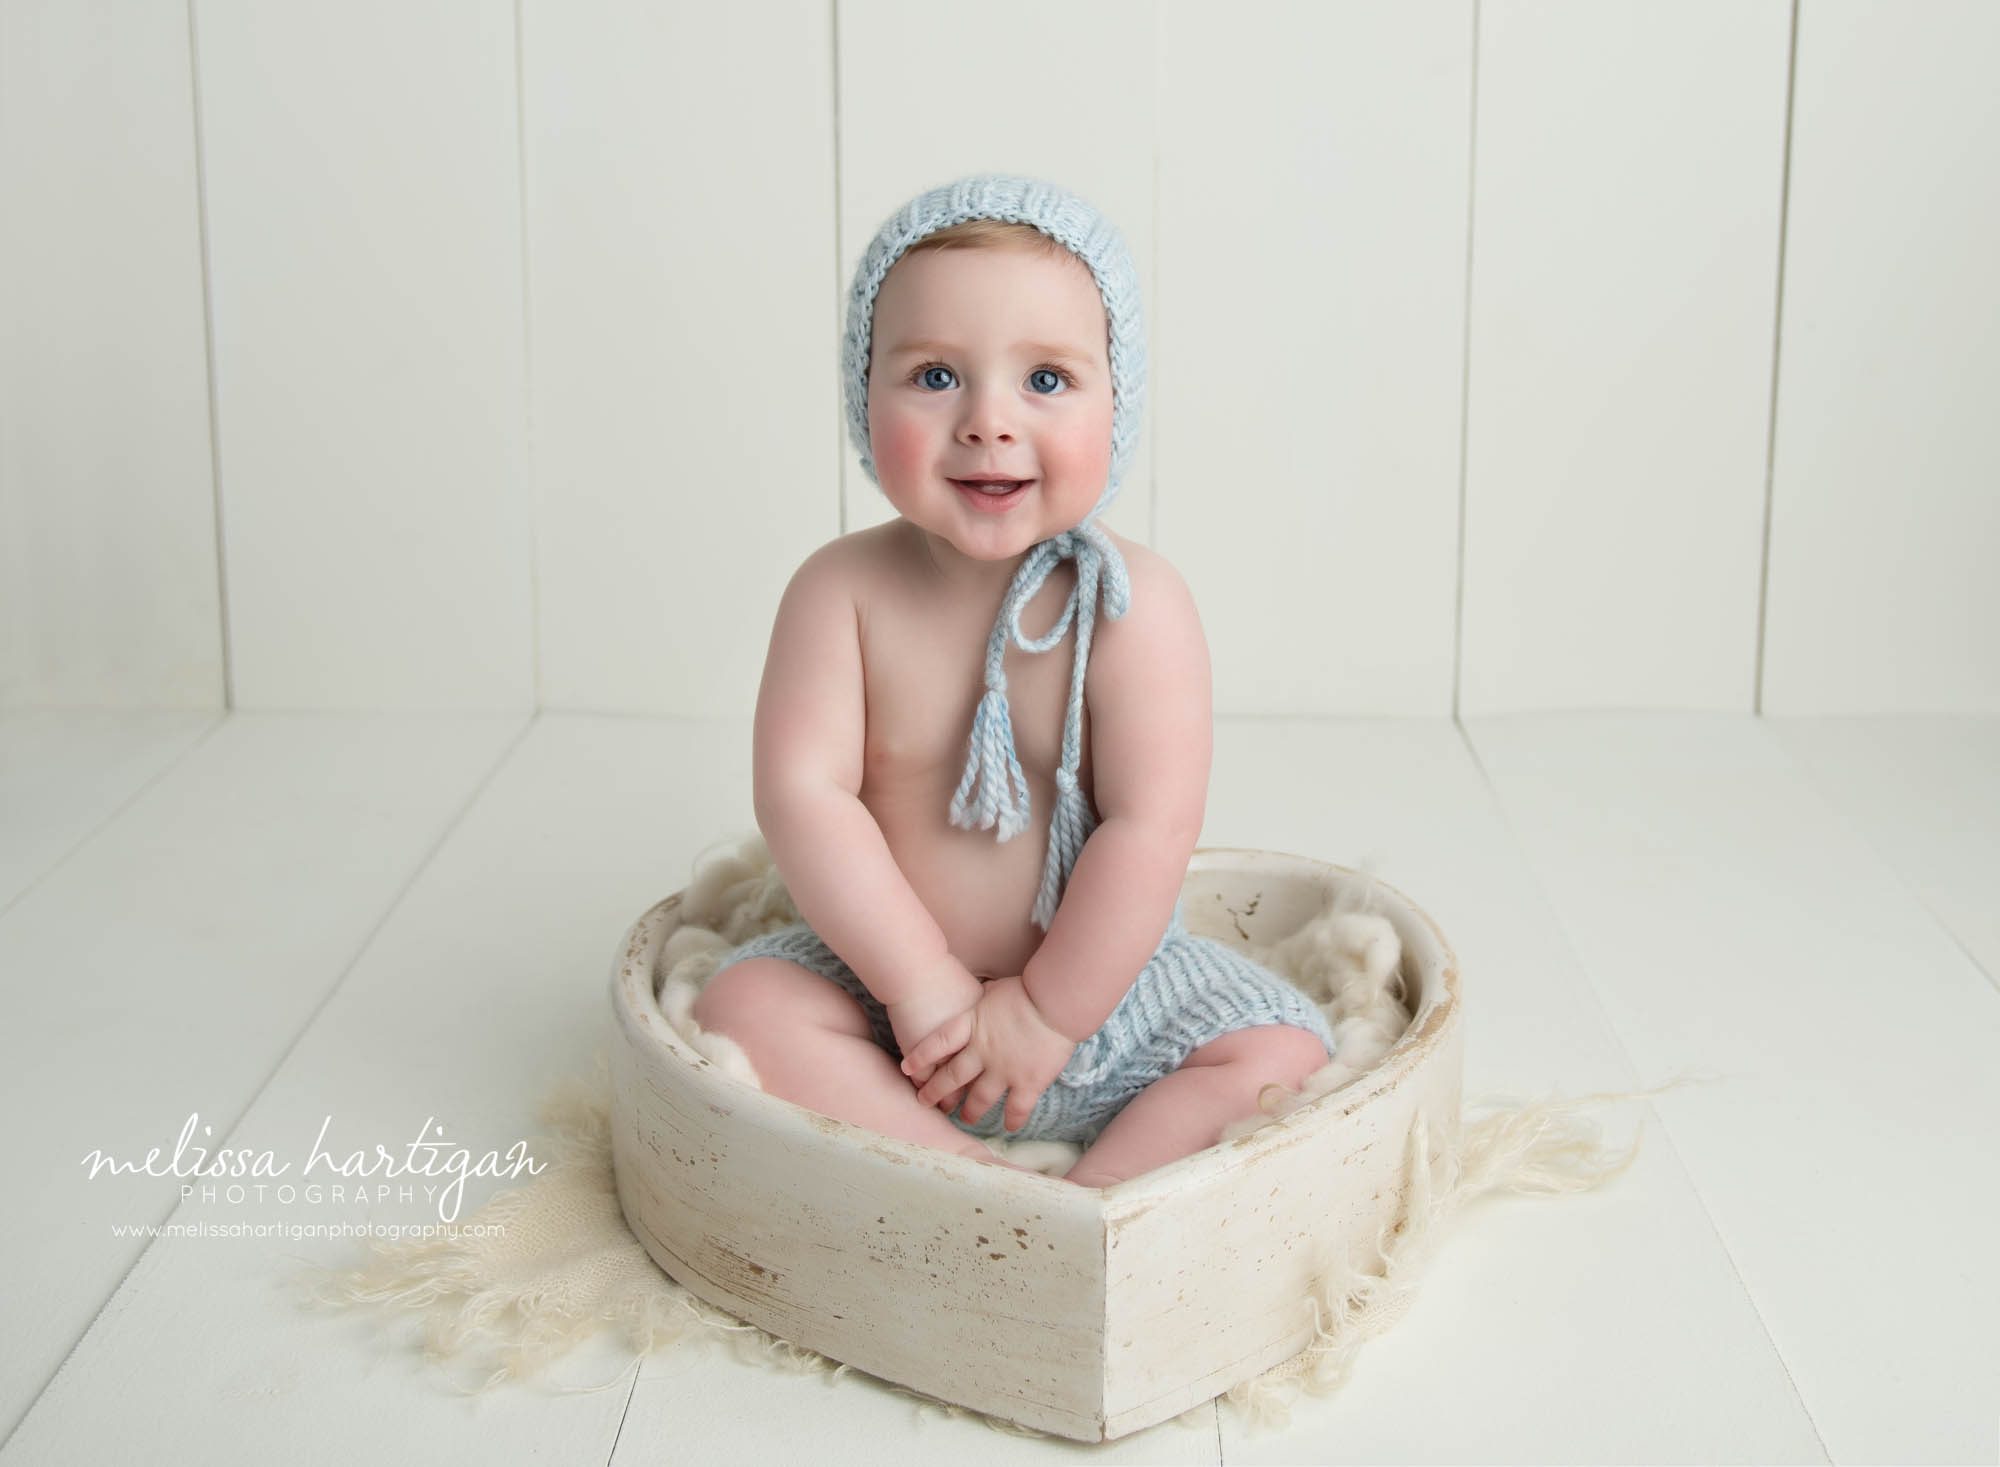 baby boy sitting in wooden heart bowl prop wearing blue knitted bonnet